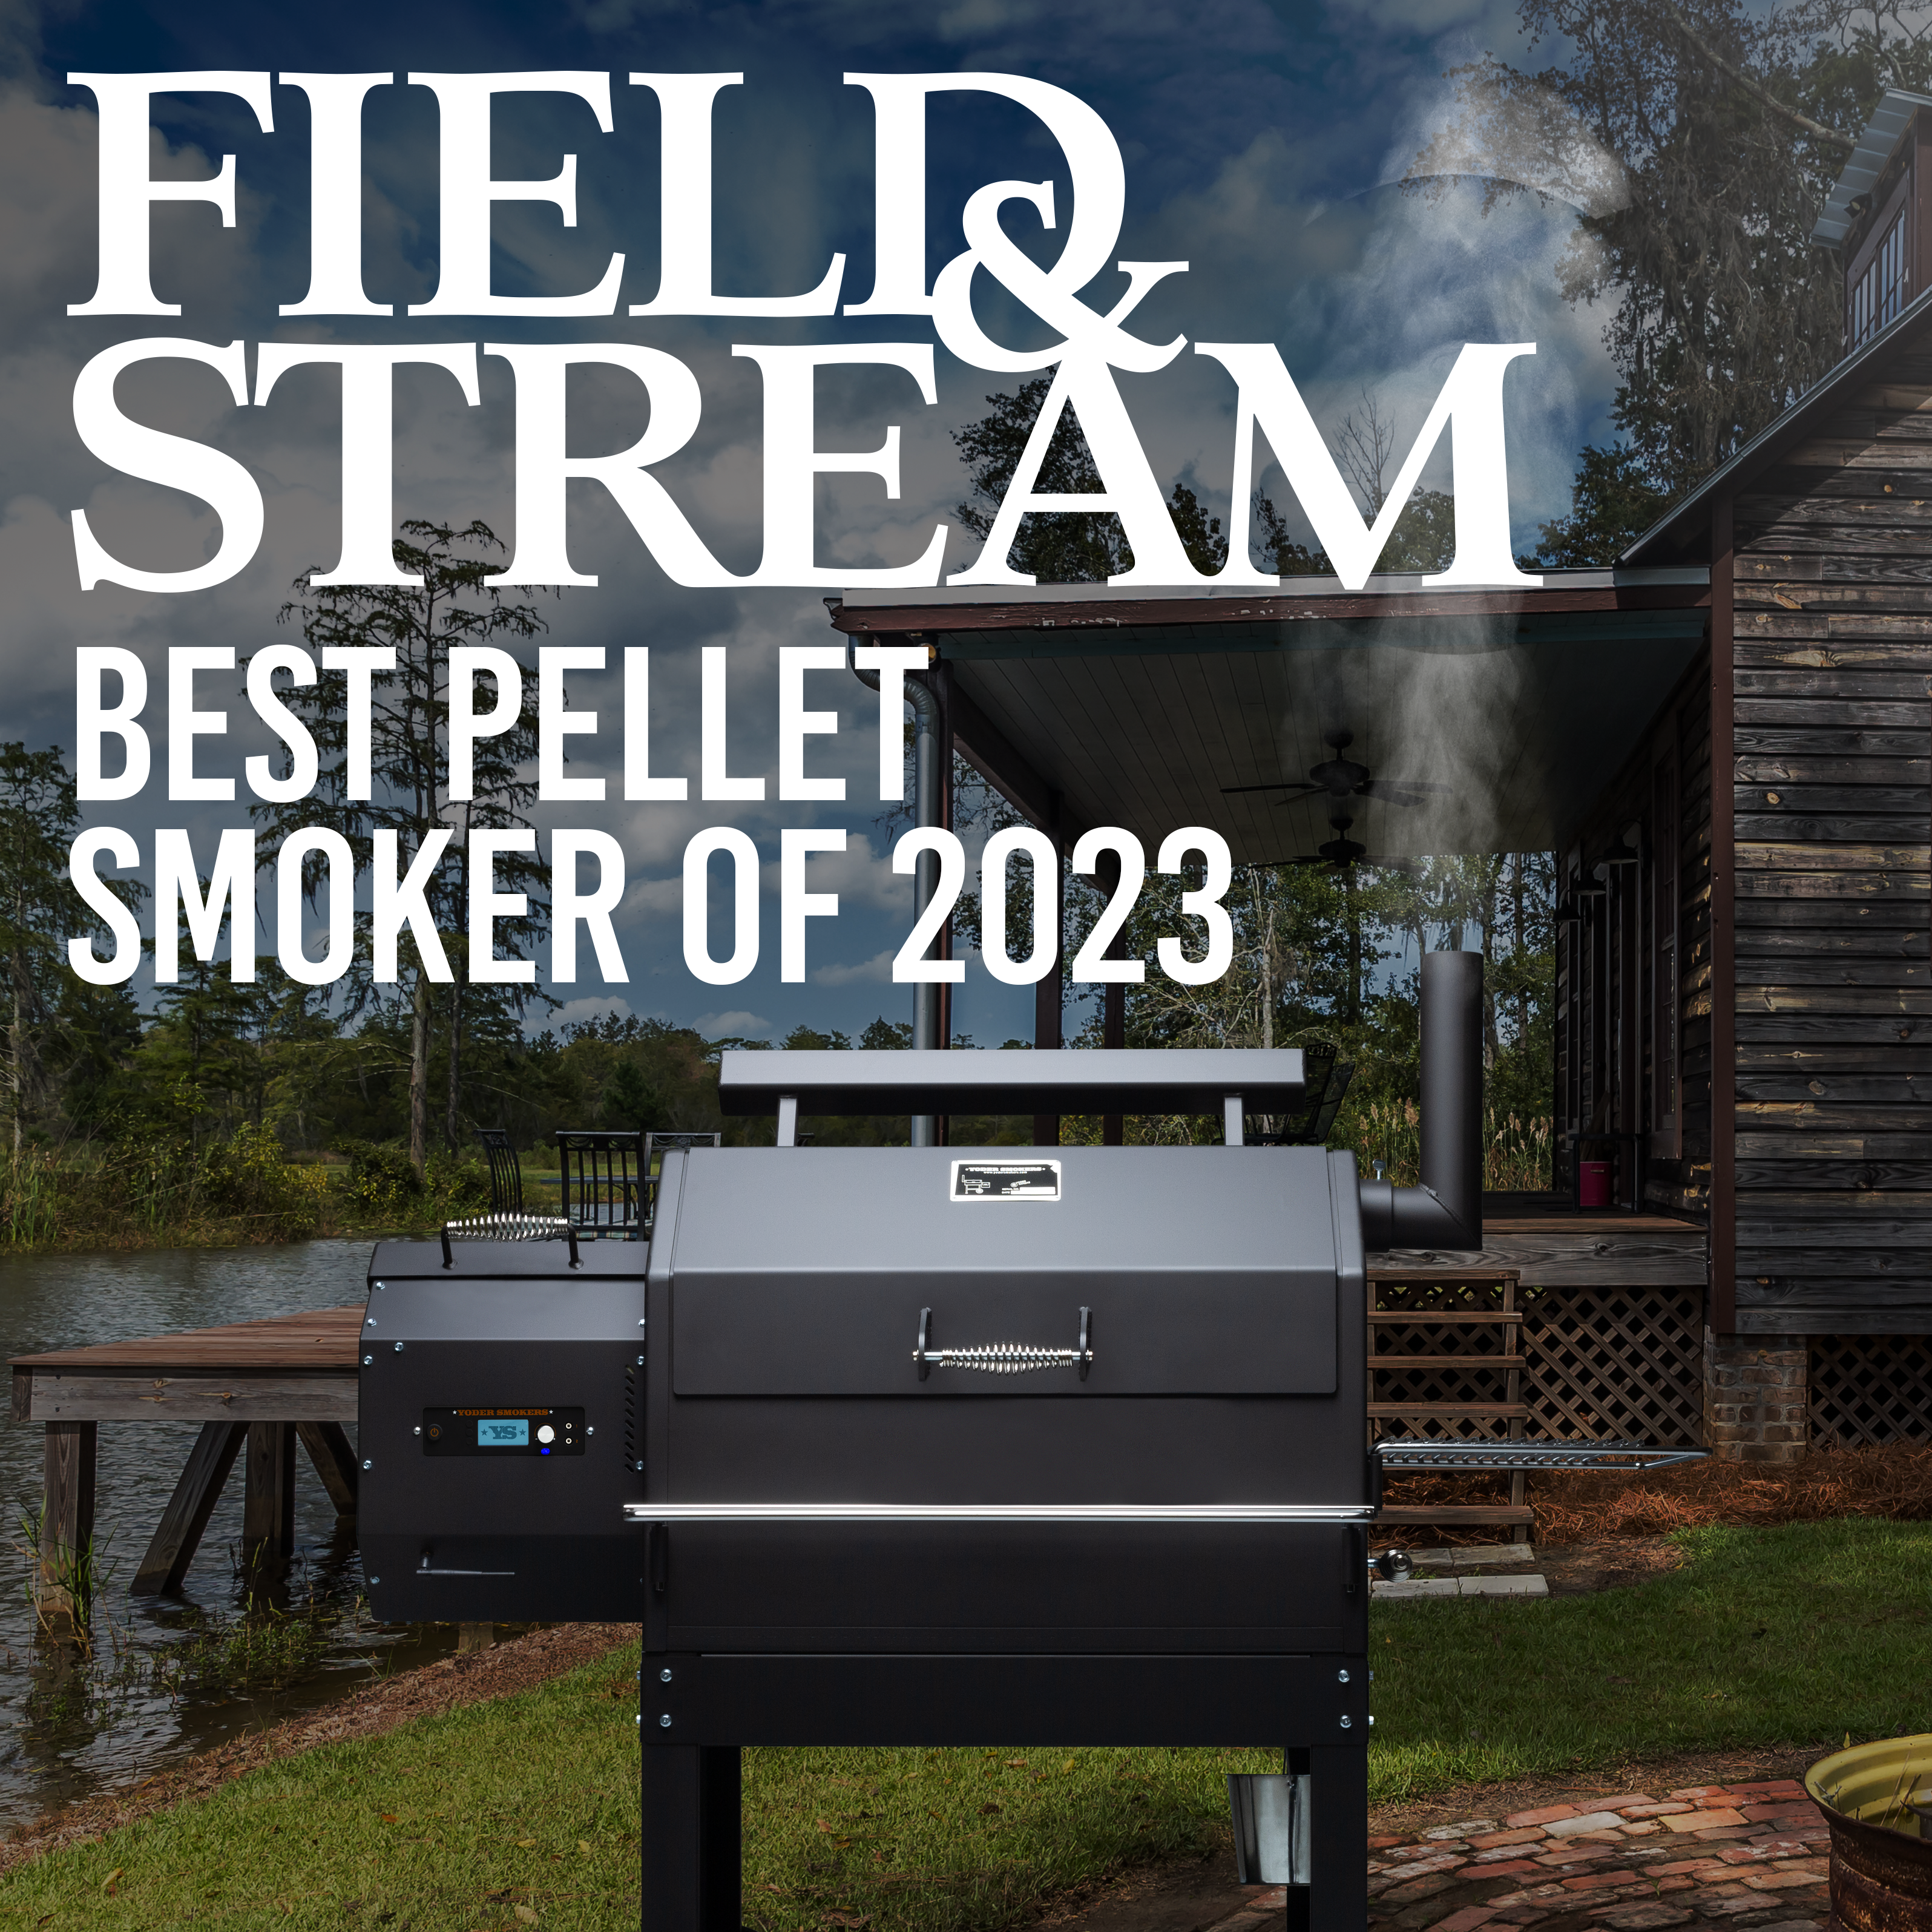 Field & Stream’s Best Pellet Smoker 2023